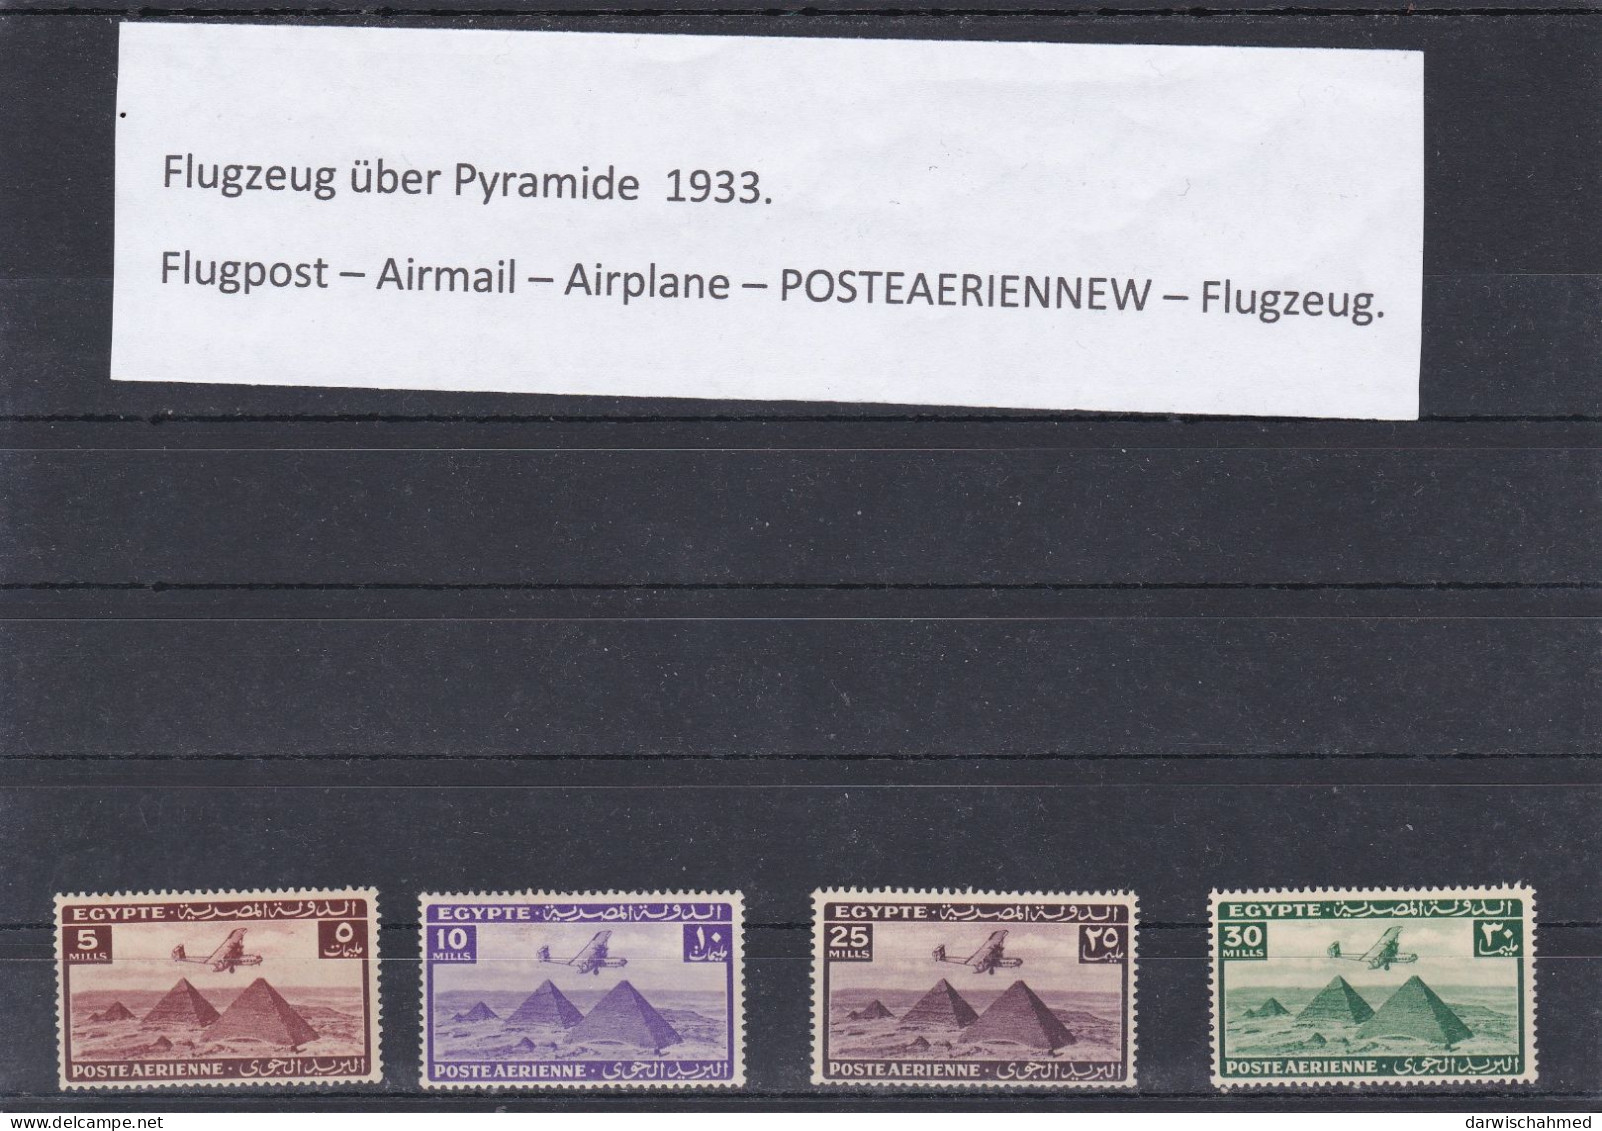 ÄGYPTEN - EGYPT - LUFTPOST - FLUGPOST- AIR MAIL - POSTE AERIENNE - FLUGZEUG 1941 Mi: 261 - 264 - Airmail